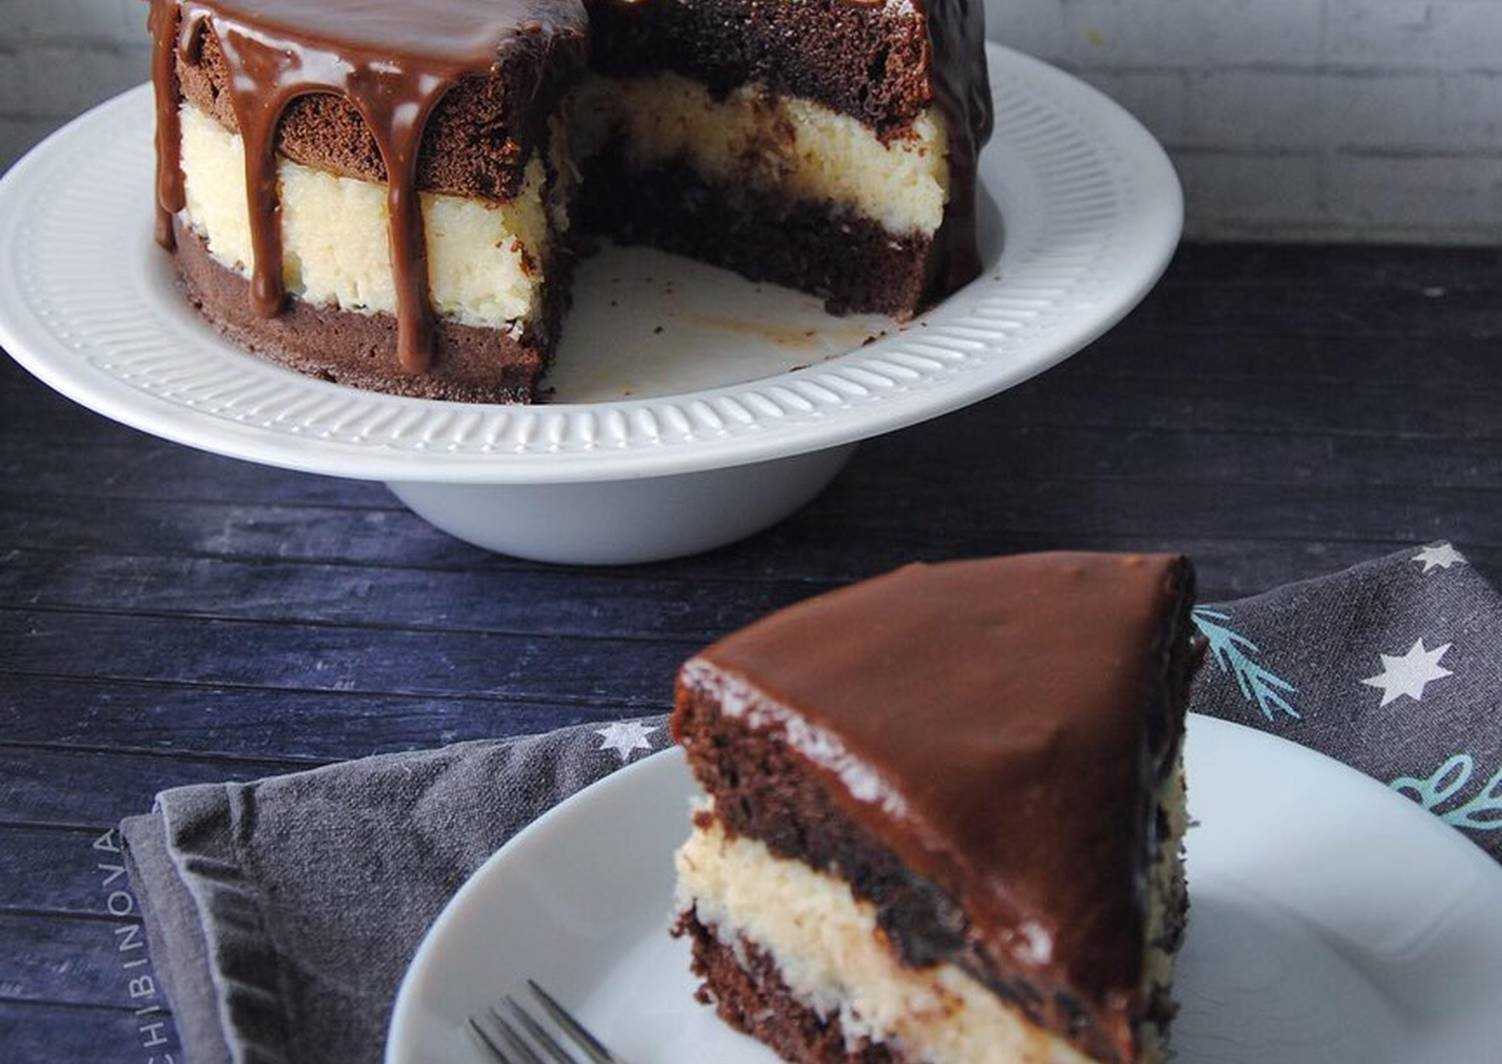 Шоколадный бисквит для торта в духовке пышный и простой